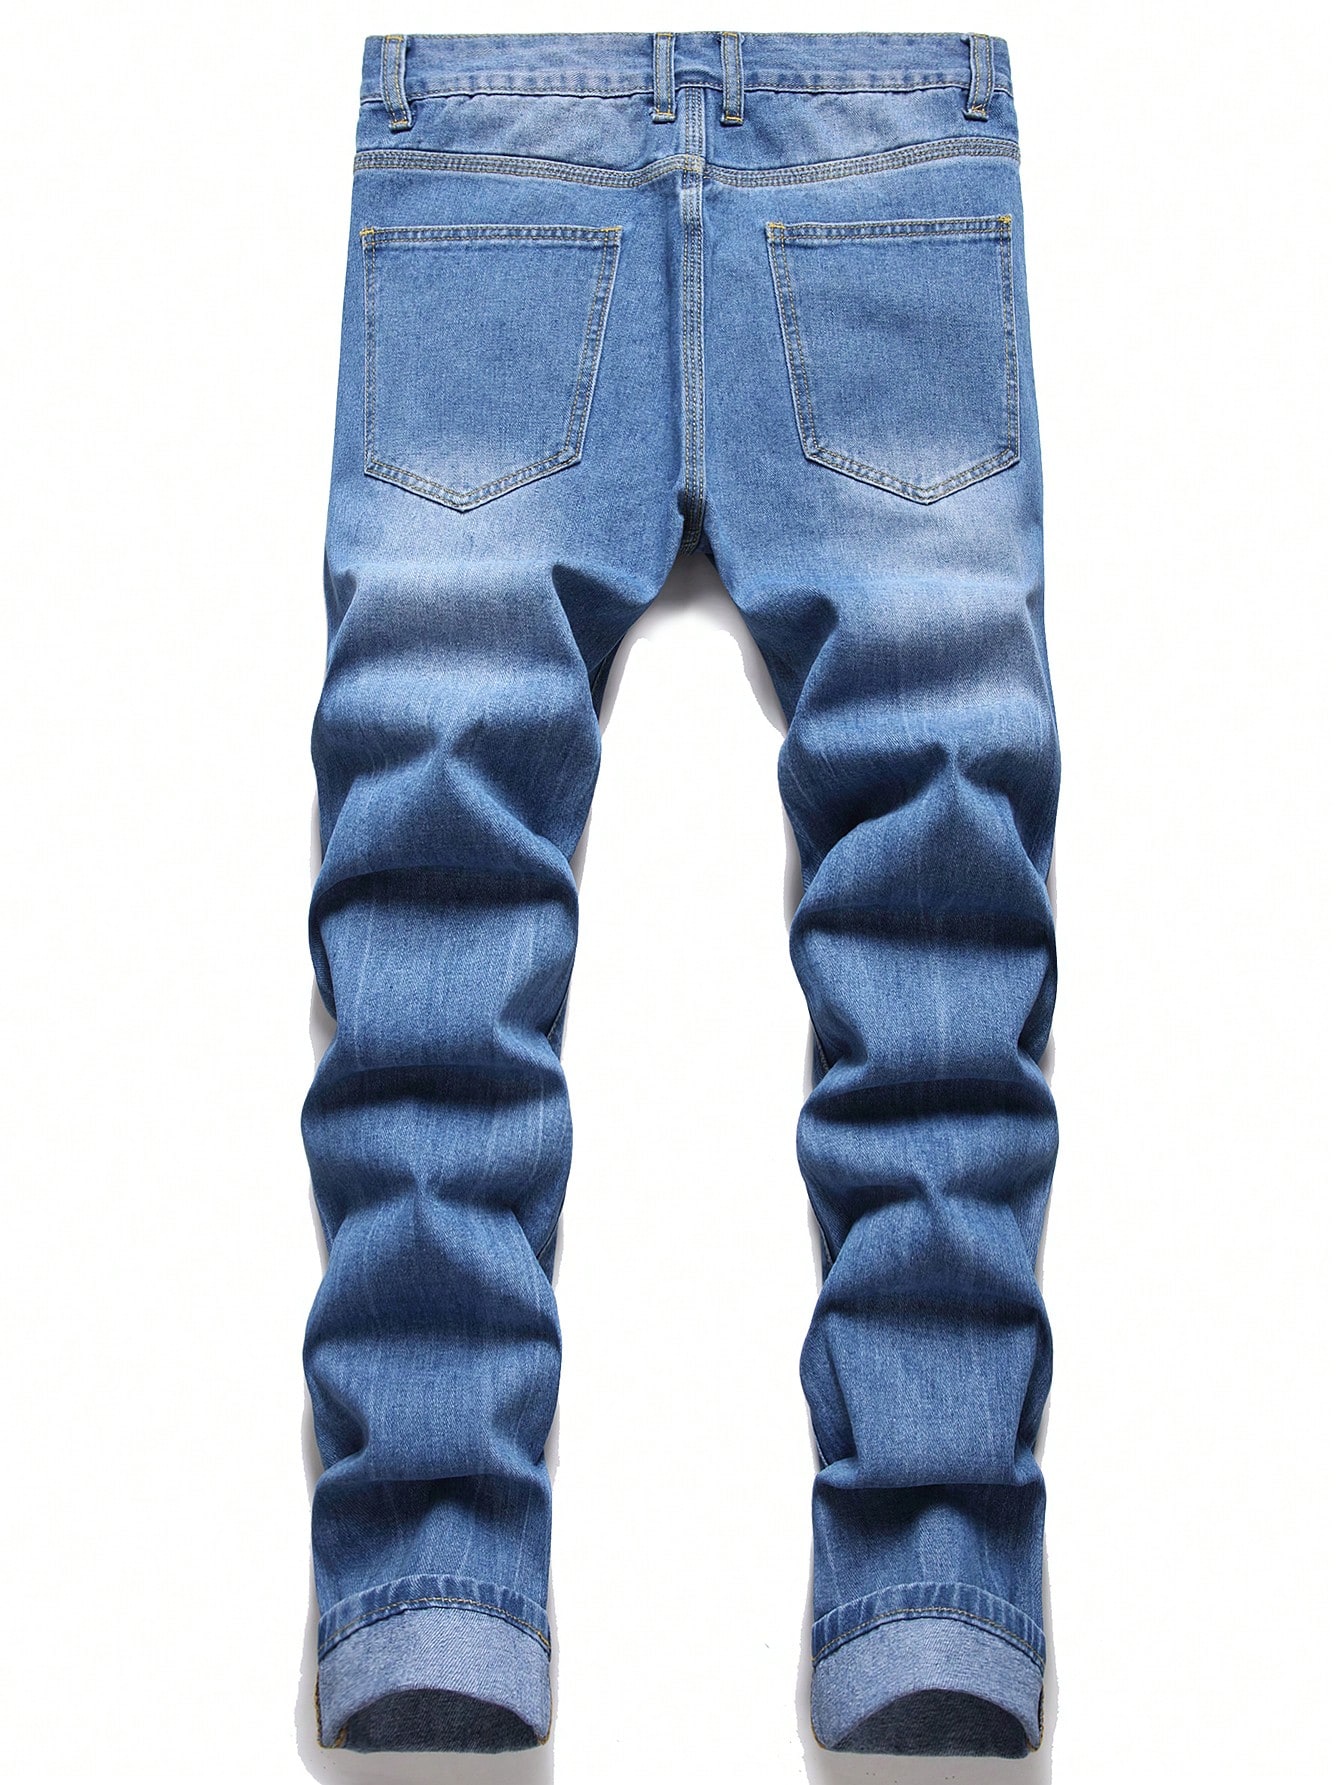 цена Мужские рваные джинсы на плюшевой подкладке с аппликацией в виде плюшевого мишки, легкая стирка